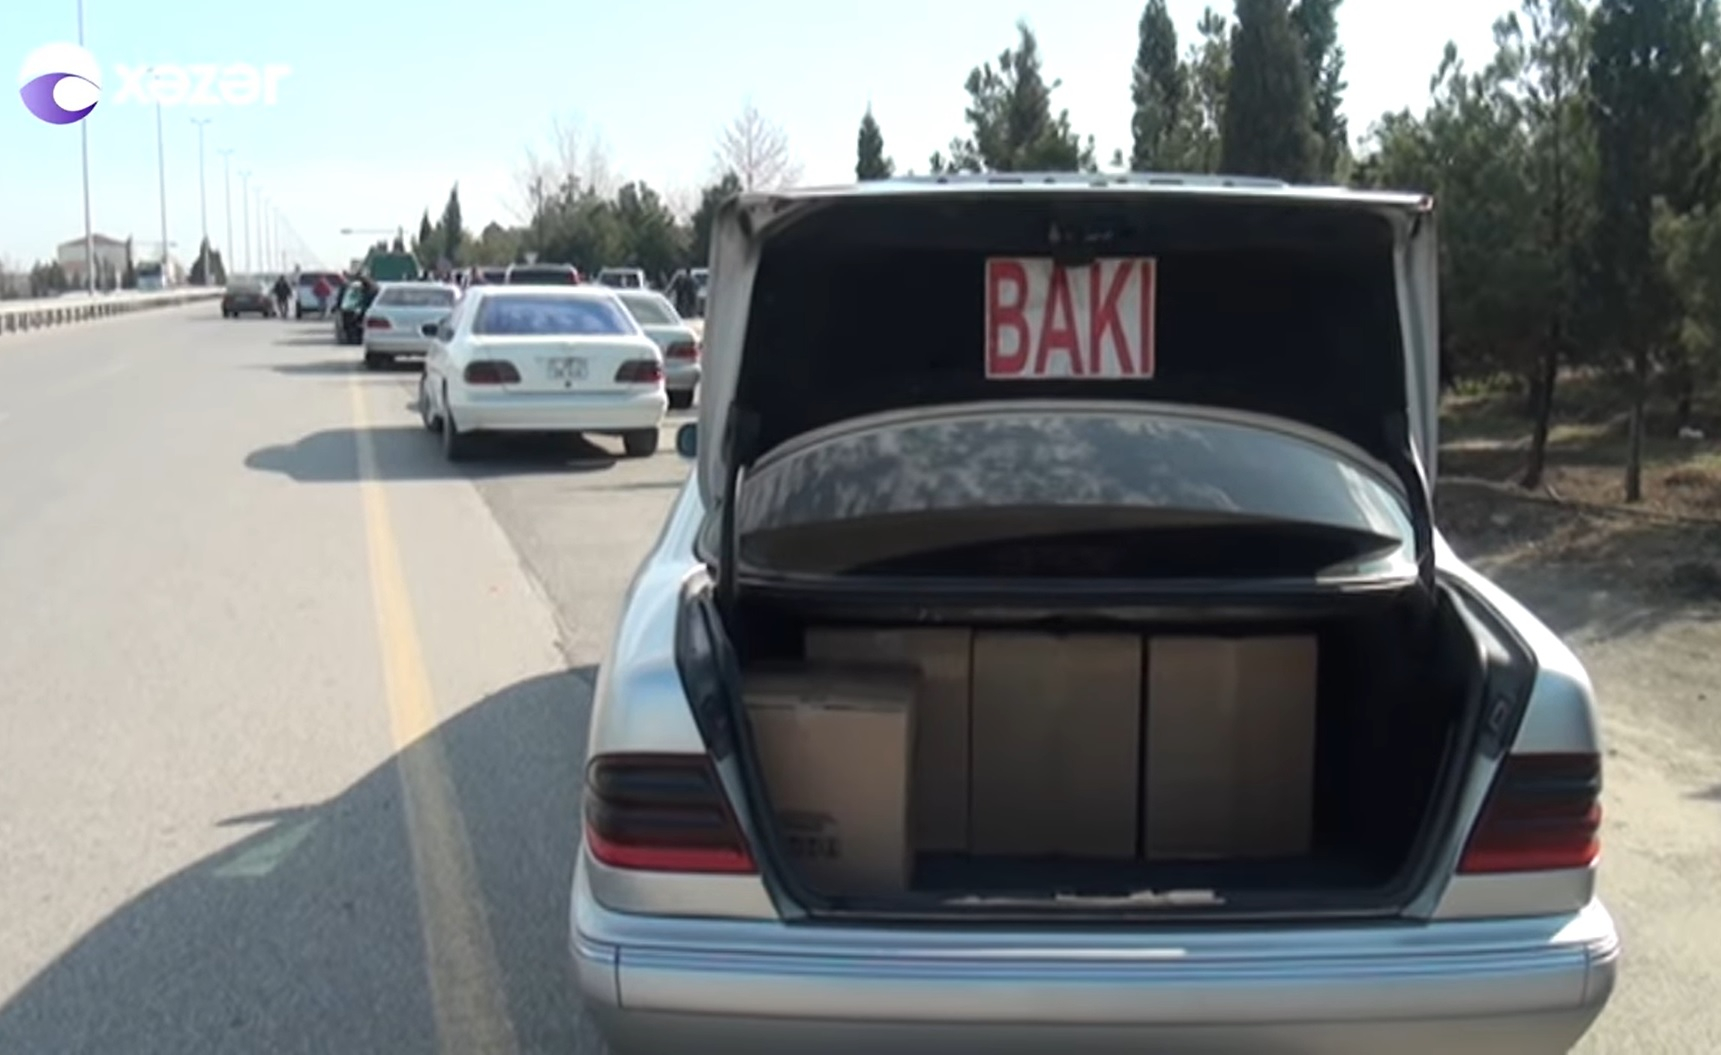 Bakıya sərnişin daşıyan taksi sürücüləri gediş haqlarını artırdı - VİDEO